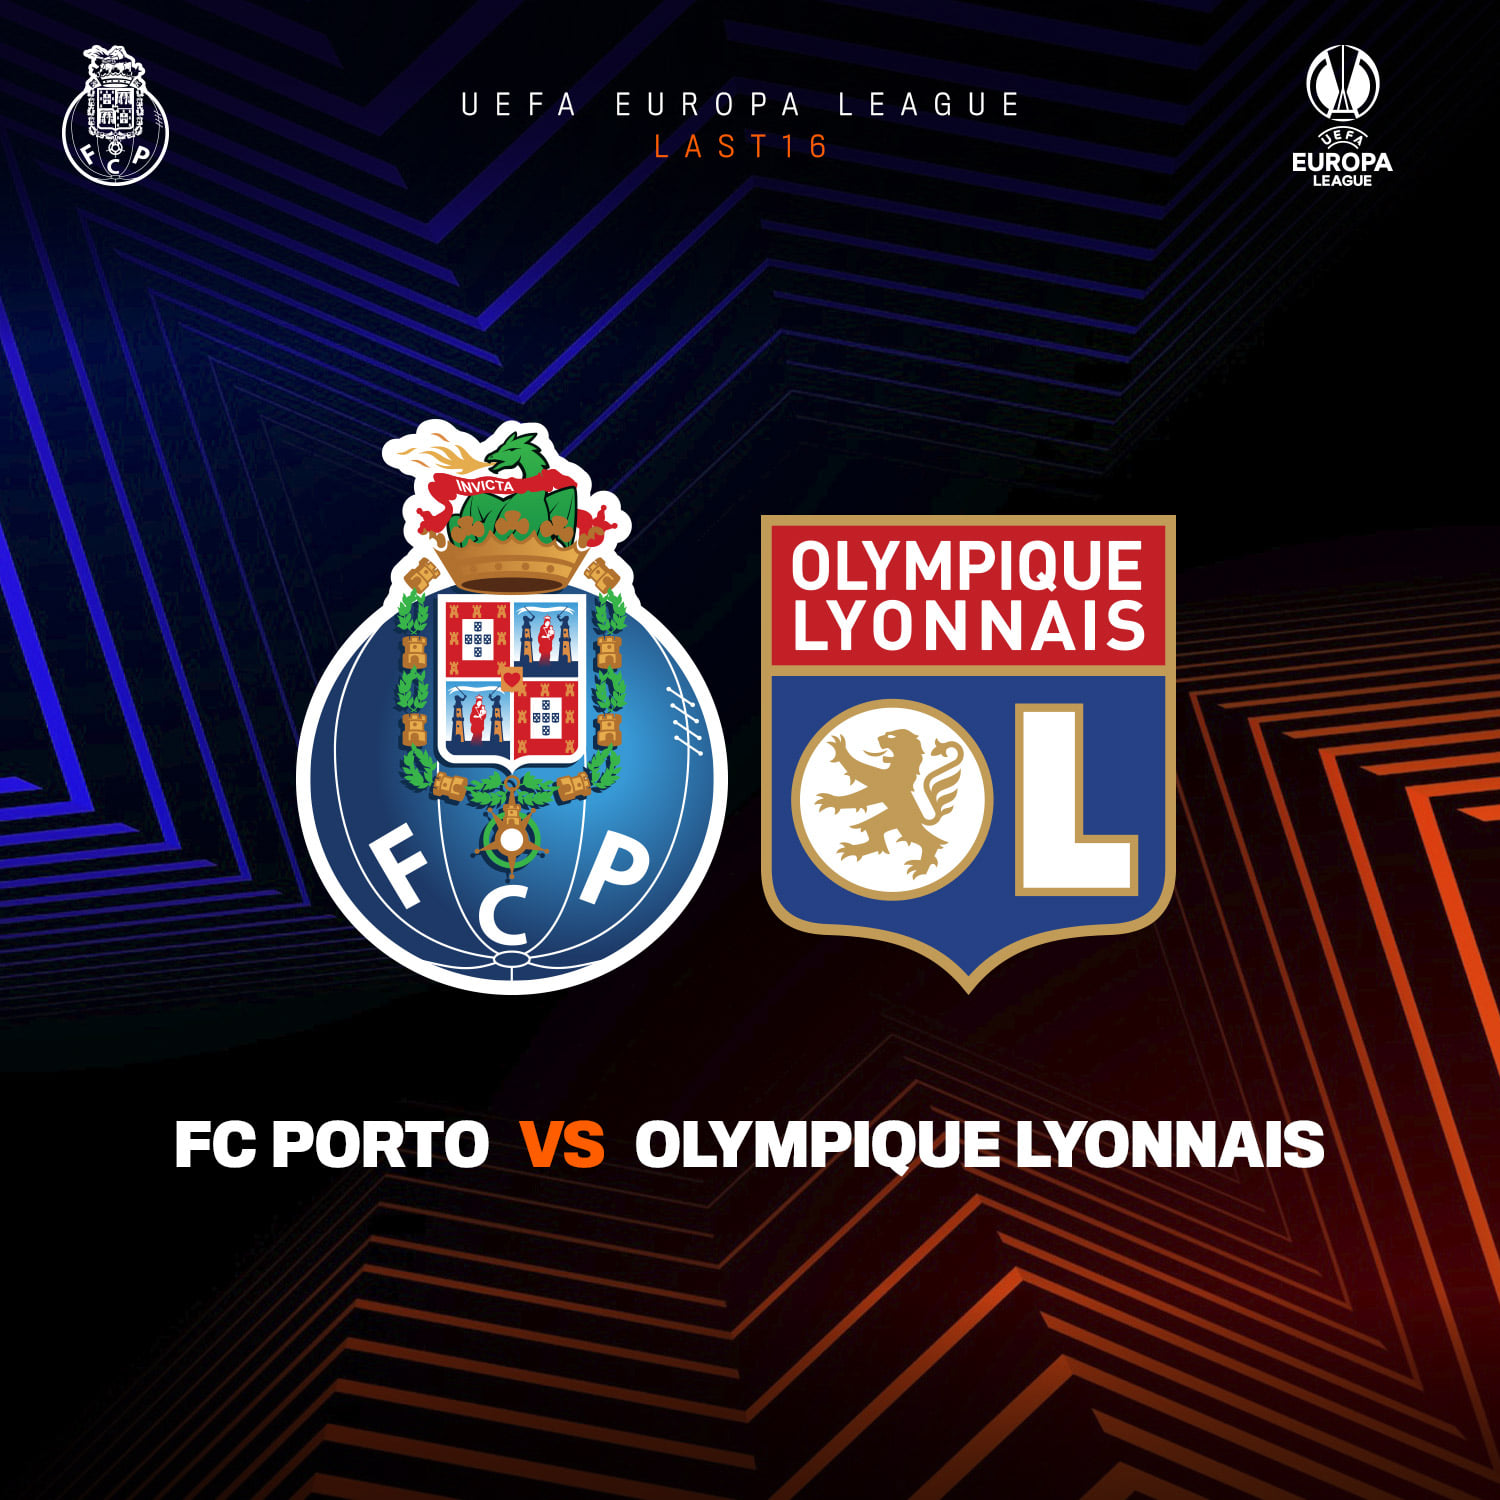  FC Porto vs Lyon - Event